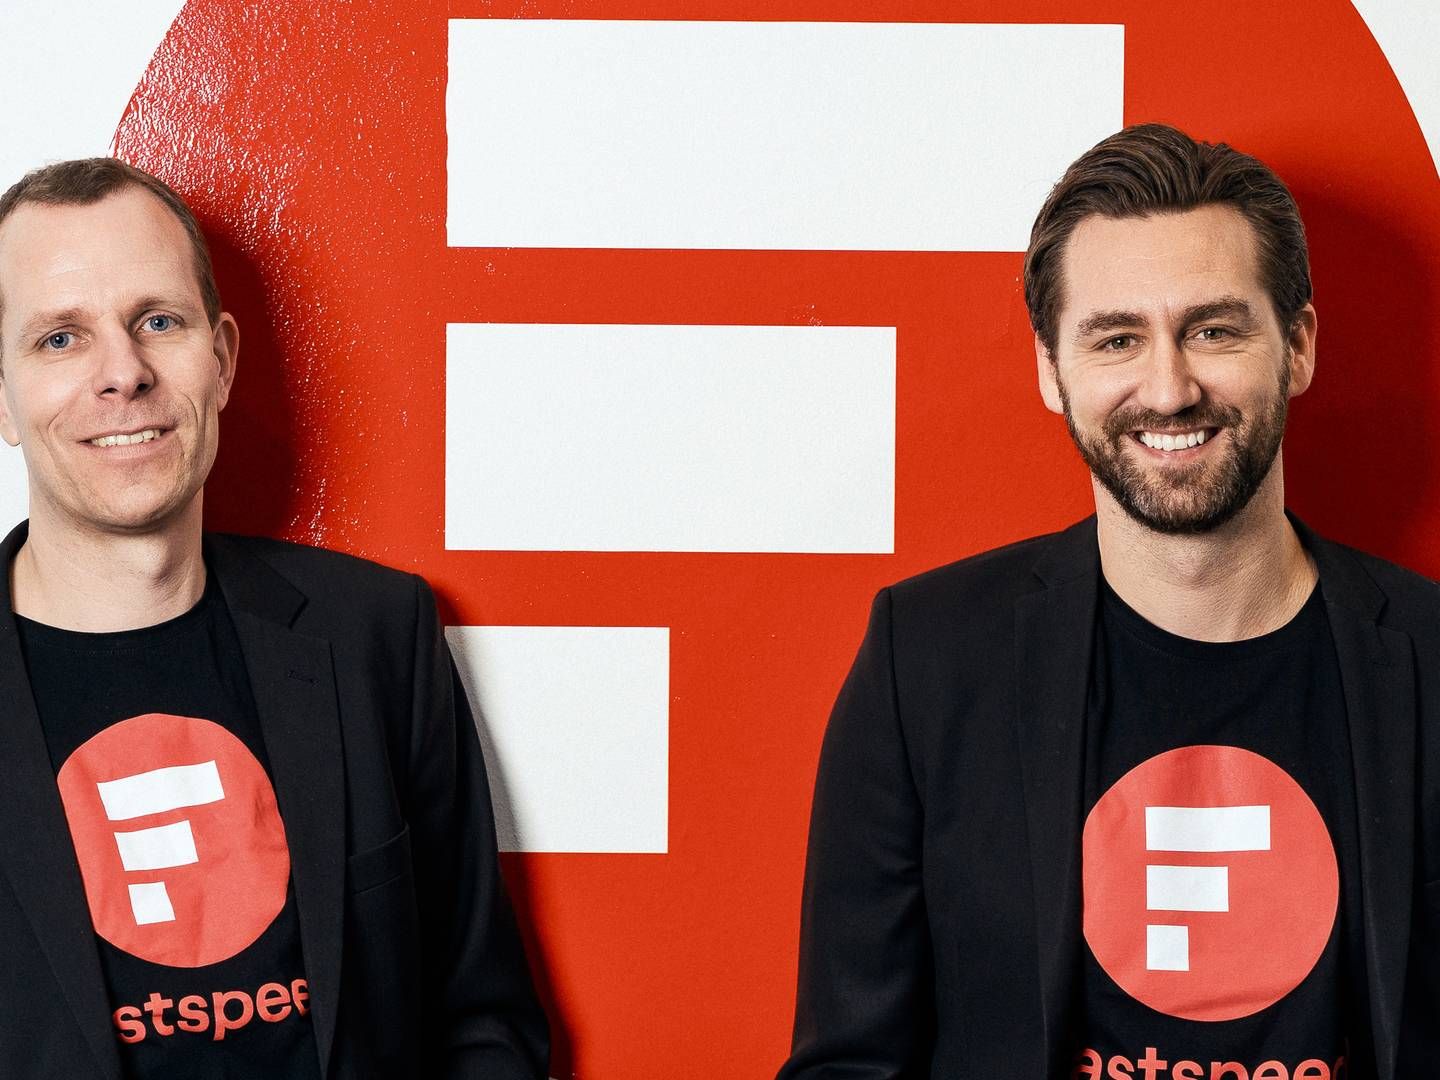 Adm. direktør Jens Raith (tv.) og kommerciel direktør Morten Boe Andersen, der står bag den ambitiøse bredbåndsvirksomhed Fastspeed, som afviser at være til salg | Foto: Fastspeed / PR